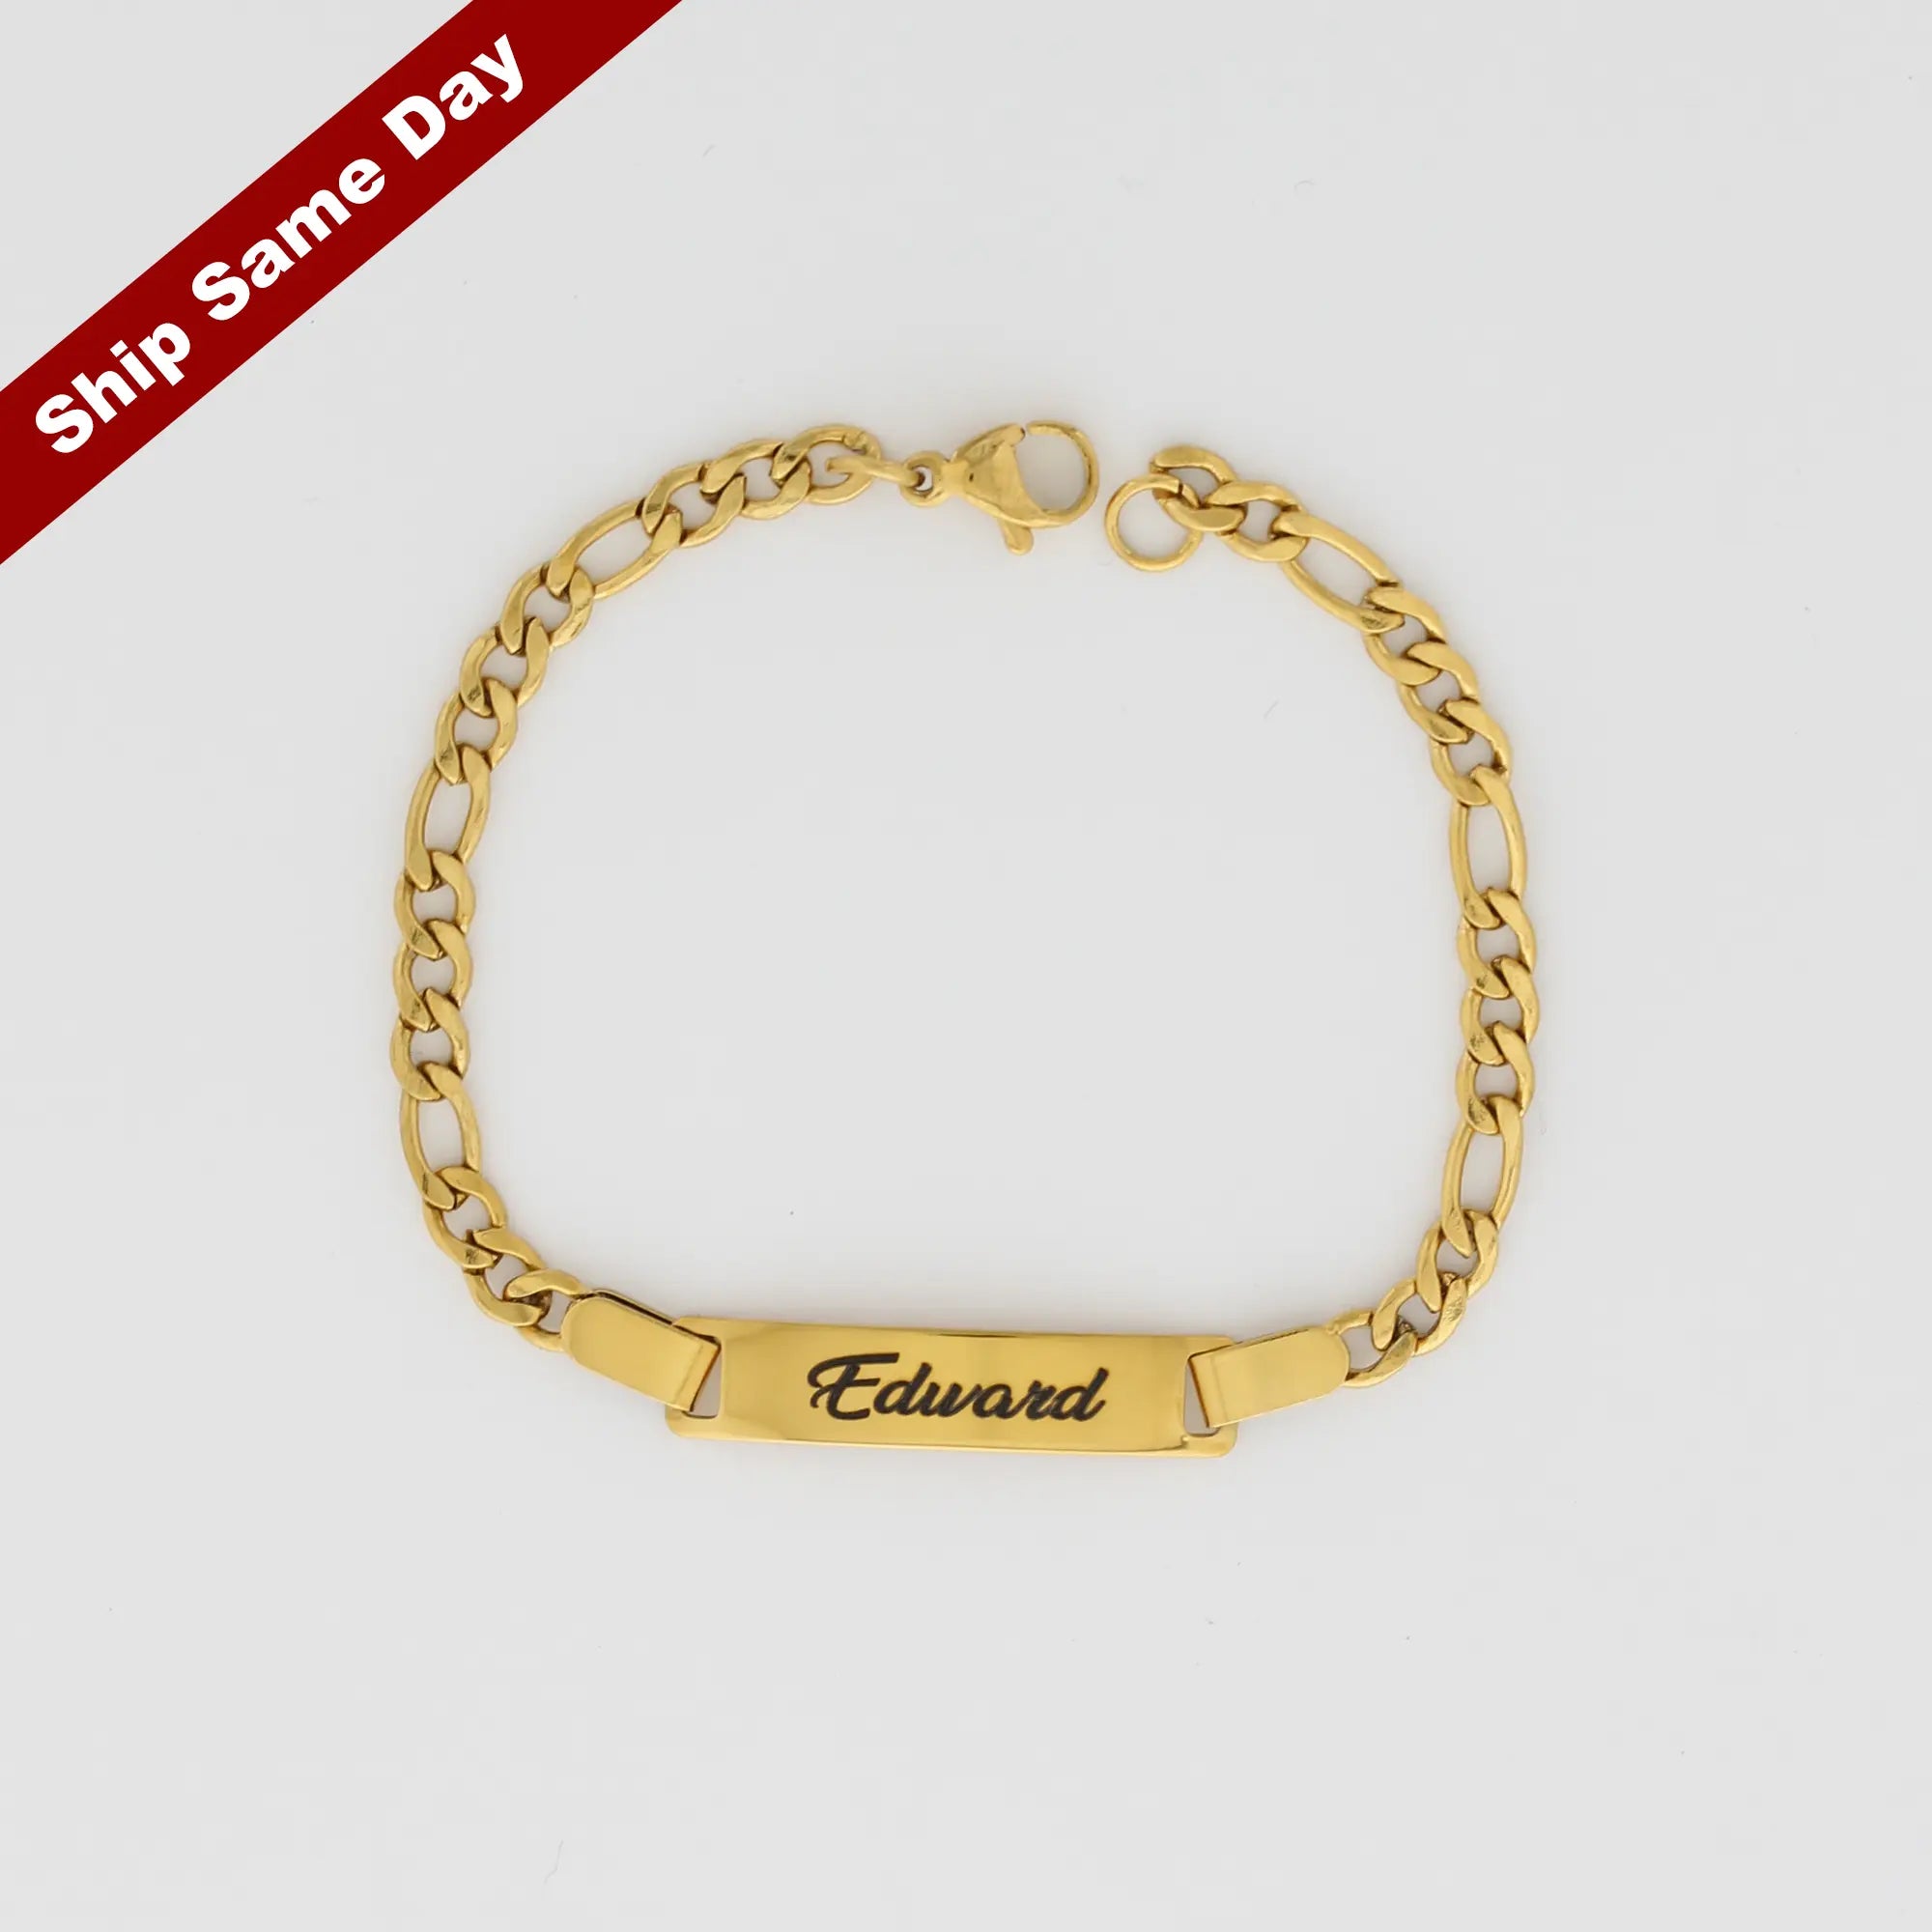 Curb Chain Bracelet, Gold Chain Bracelet